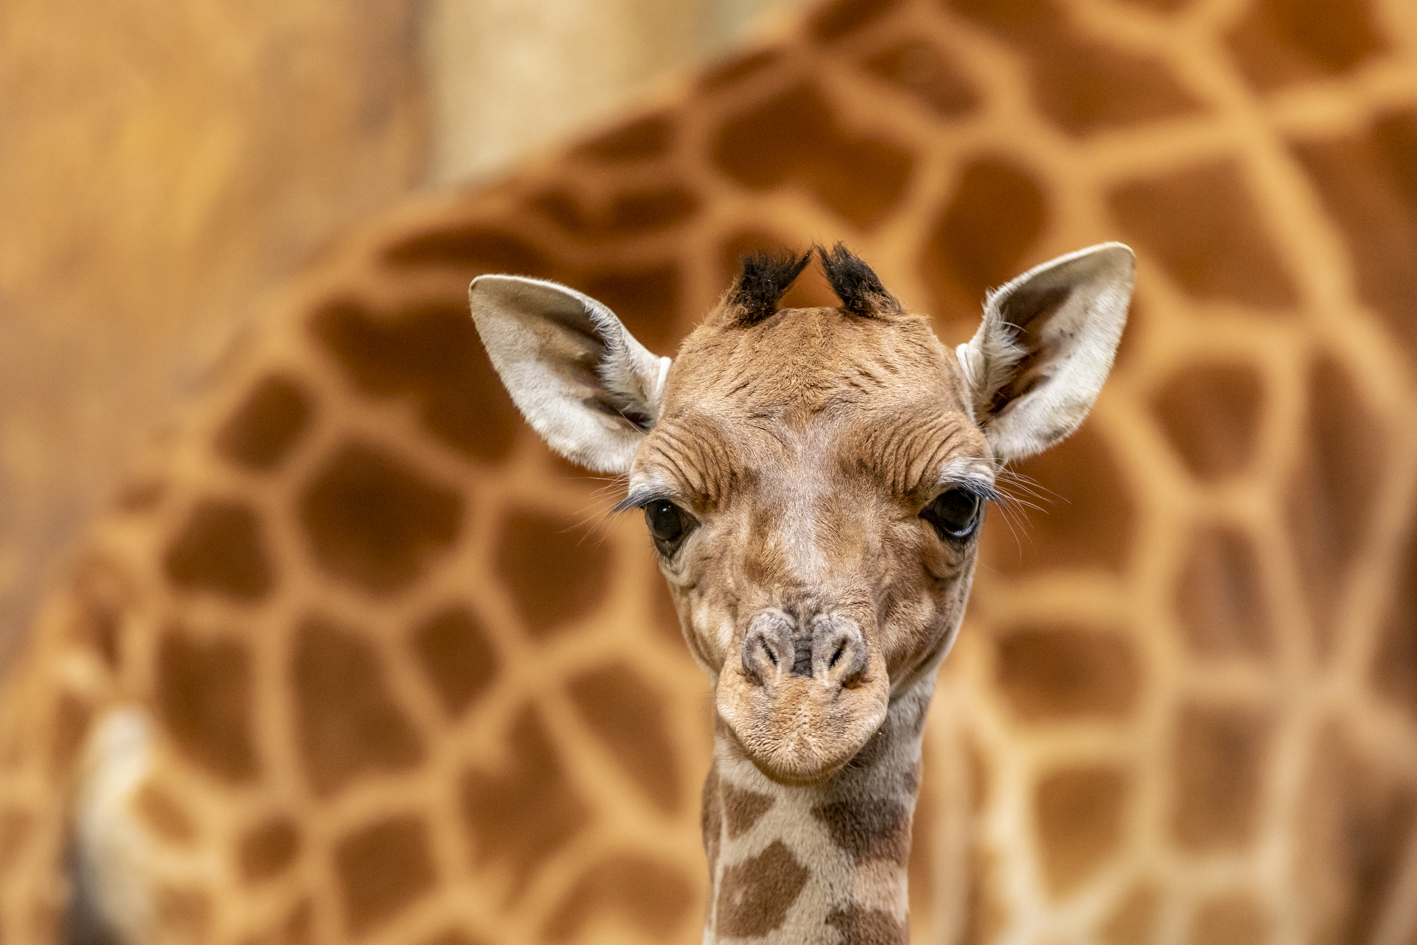 PHOTO - Naissance remarquable d'un bébé girafe au zoo de La Barben - France  Bleu